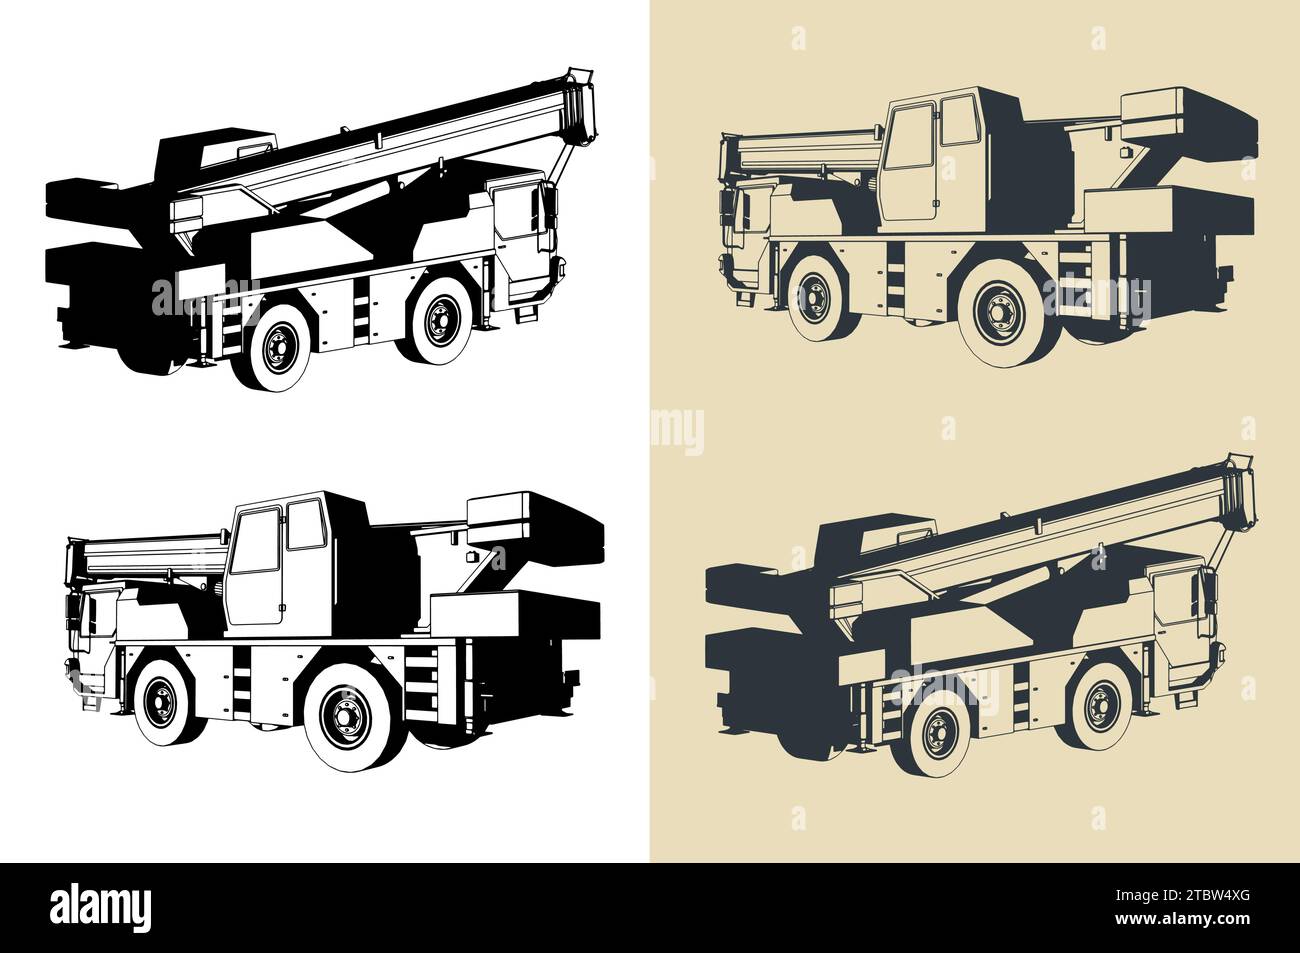 Illustrazioni vettoriali stilizzate della gru mobile con potente braccio telescopico lungo Illustrazione Vettoriale